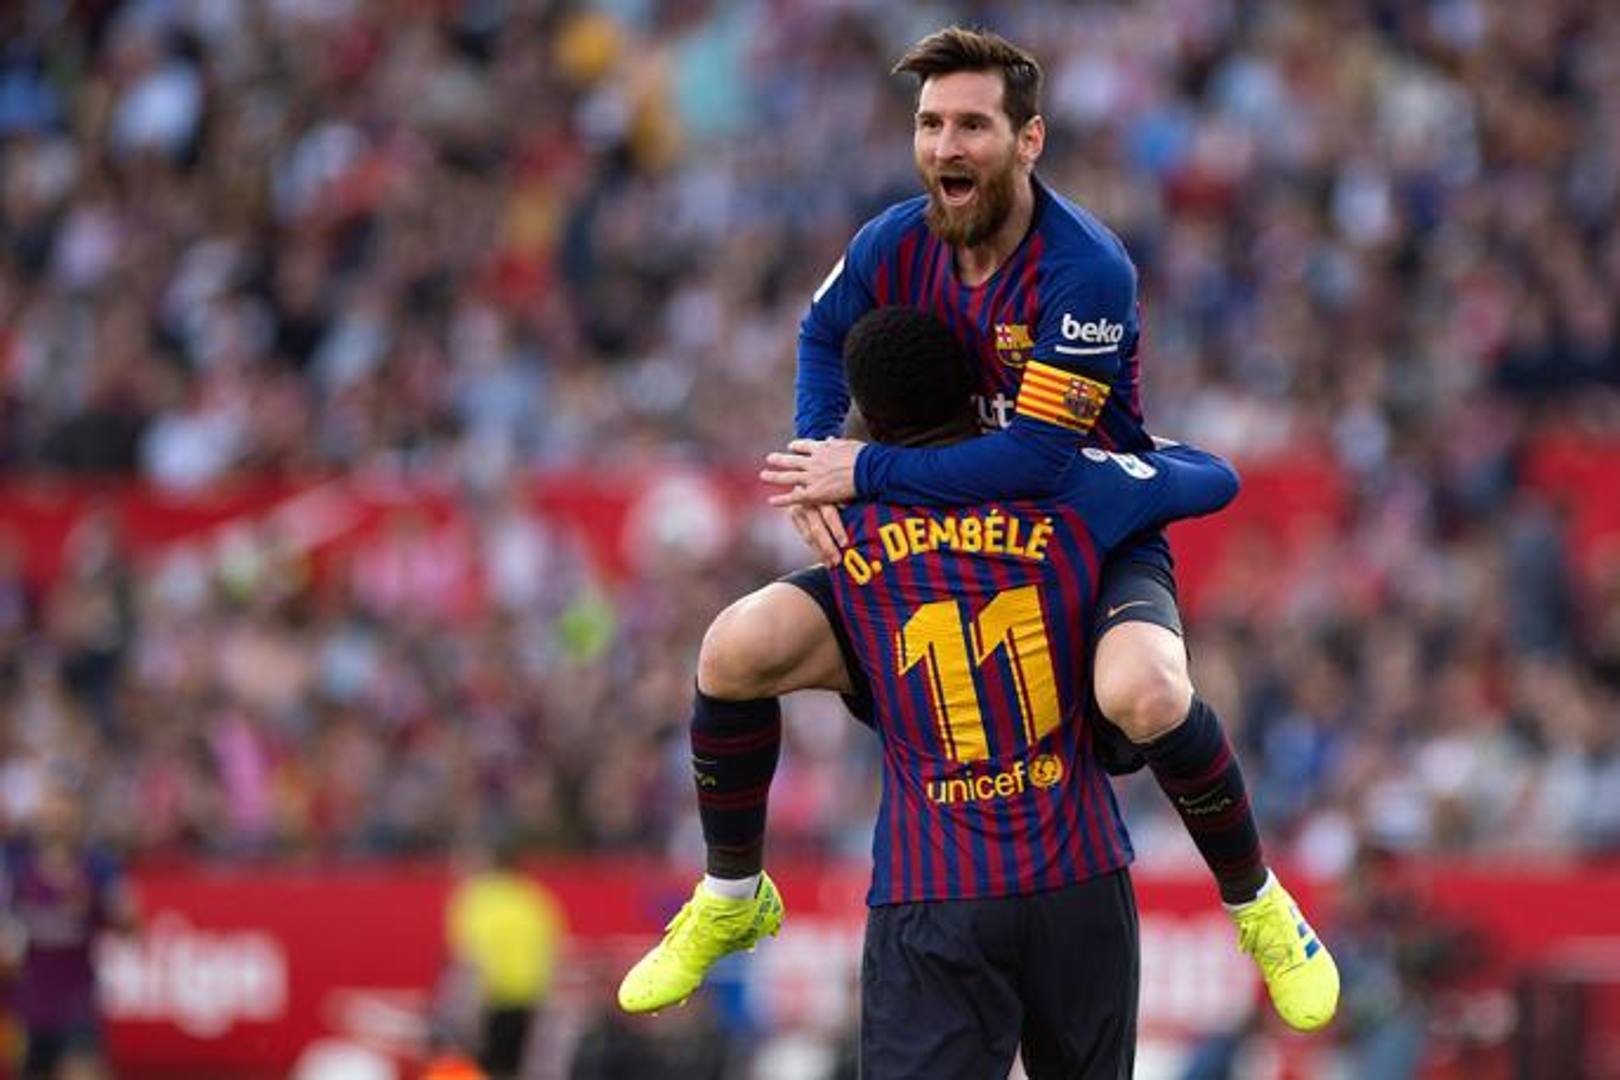  Due volte sotto, due volte pari. E la firma dell'"aggiustatore" era sempre quella di Leo Messi. Una partita da non dimenticare quella che ha visto il Barcellona battere 4-2 il Siviglia, soprattutto per il suo protagonista principale, la Pulce appunto, che ha siglato 3 gol su 4 e servito quello finale a Suarez. (Afp)  